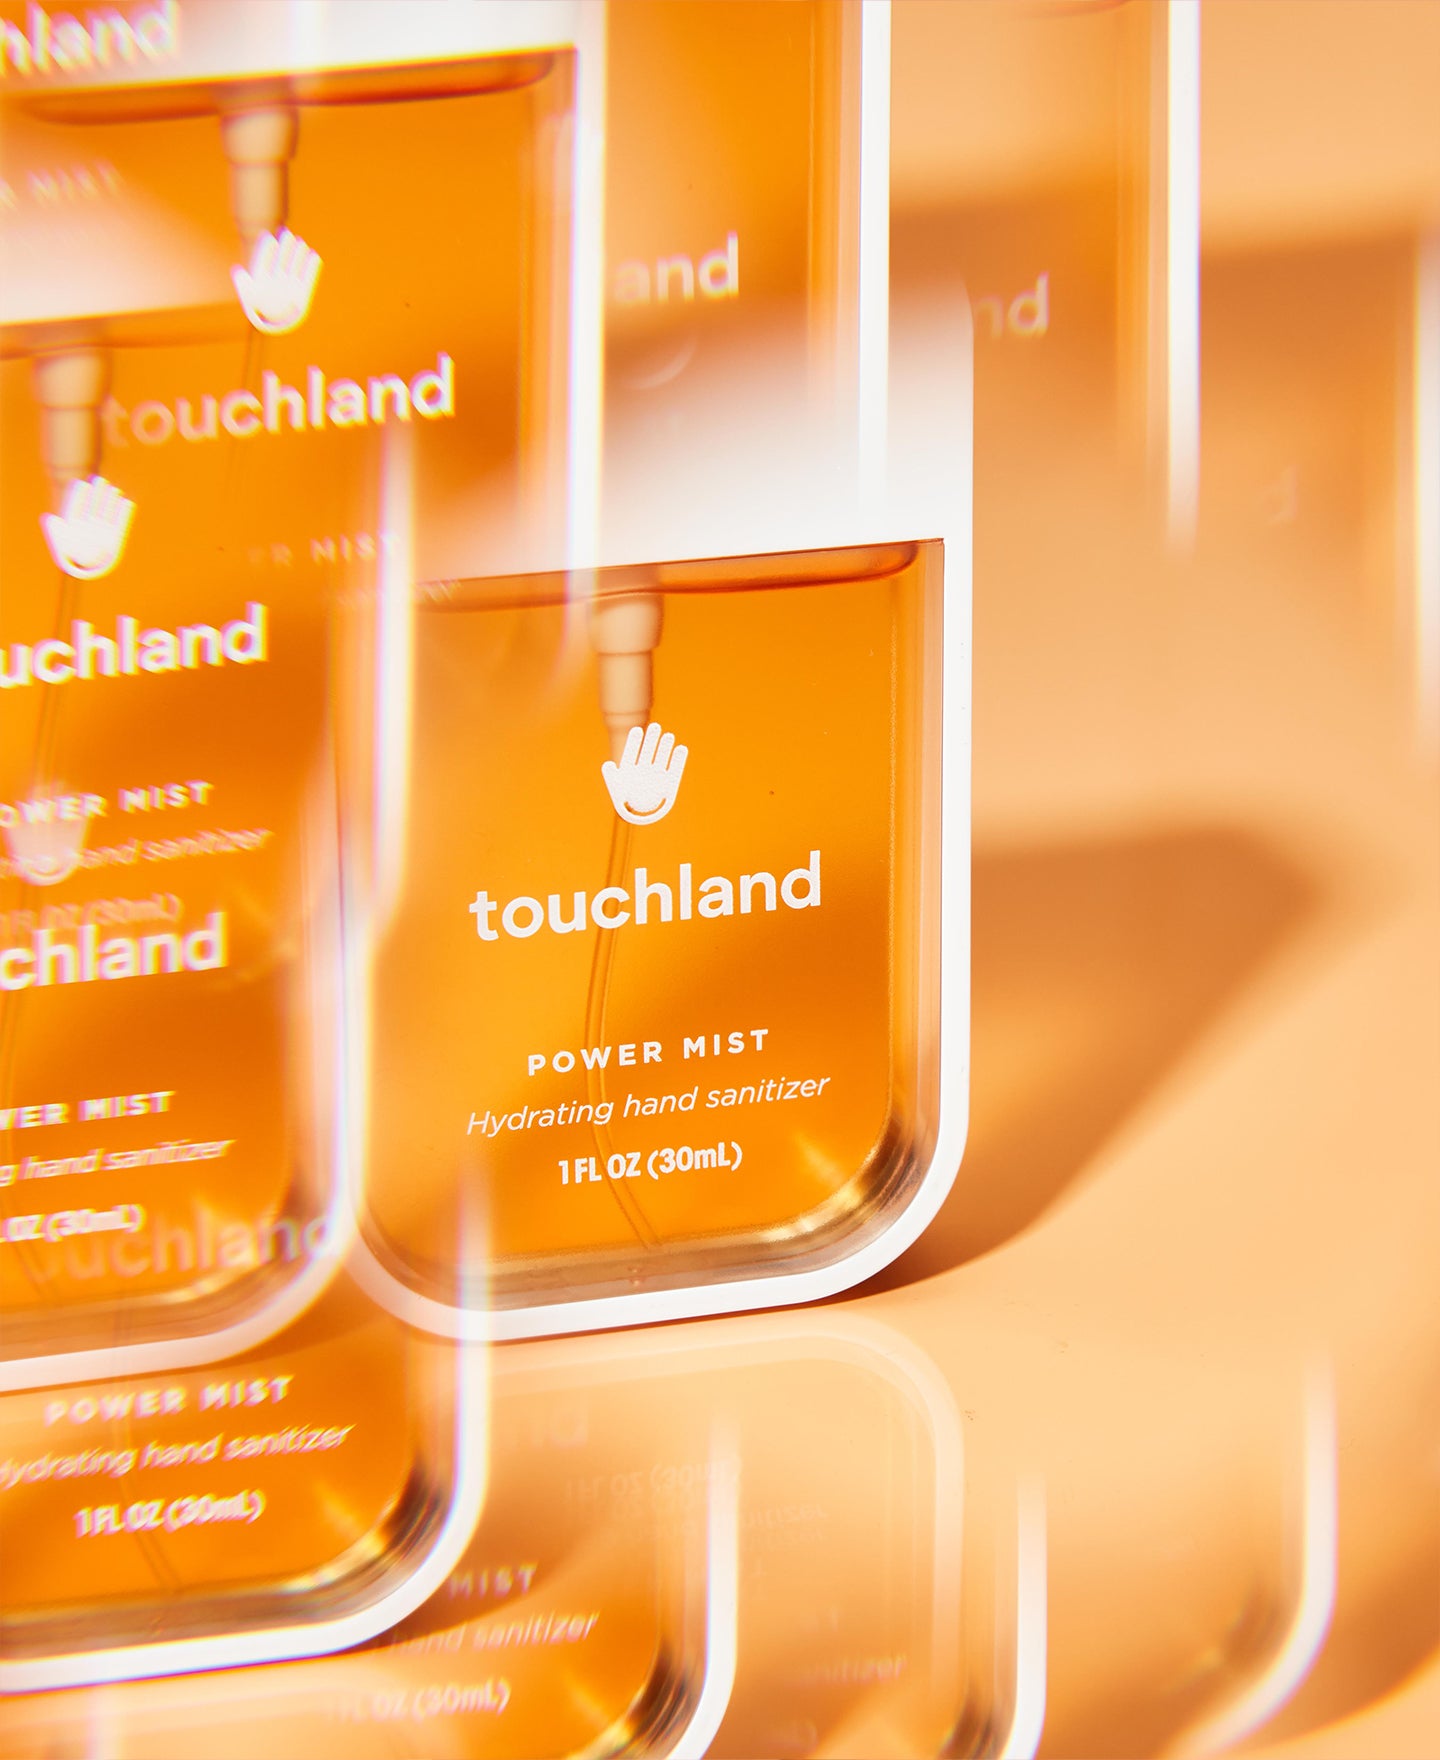 Touchland orange citrus grove power mist hand sanitizer